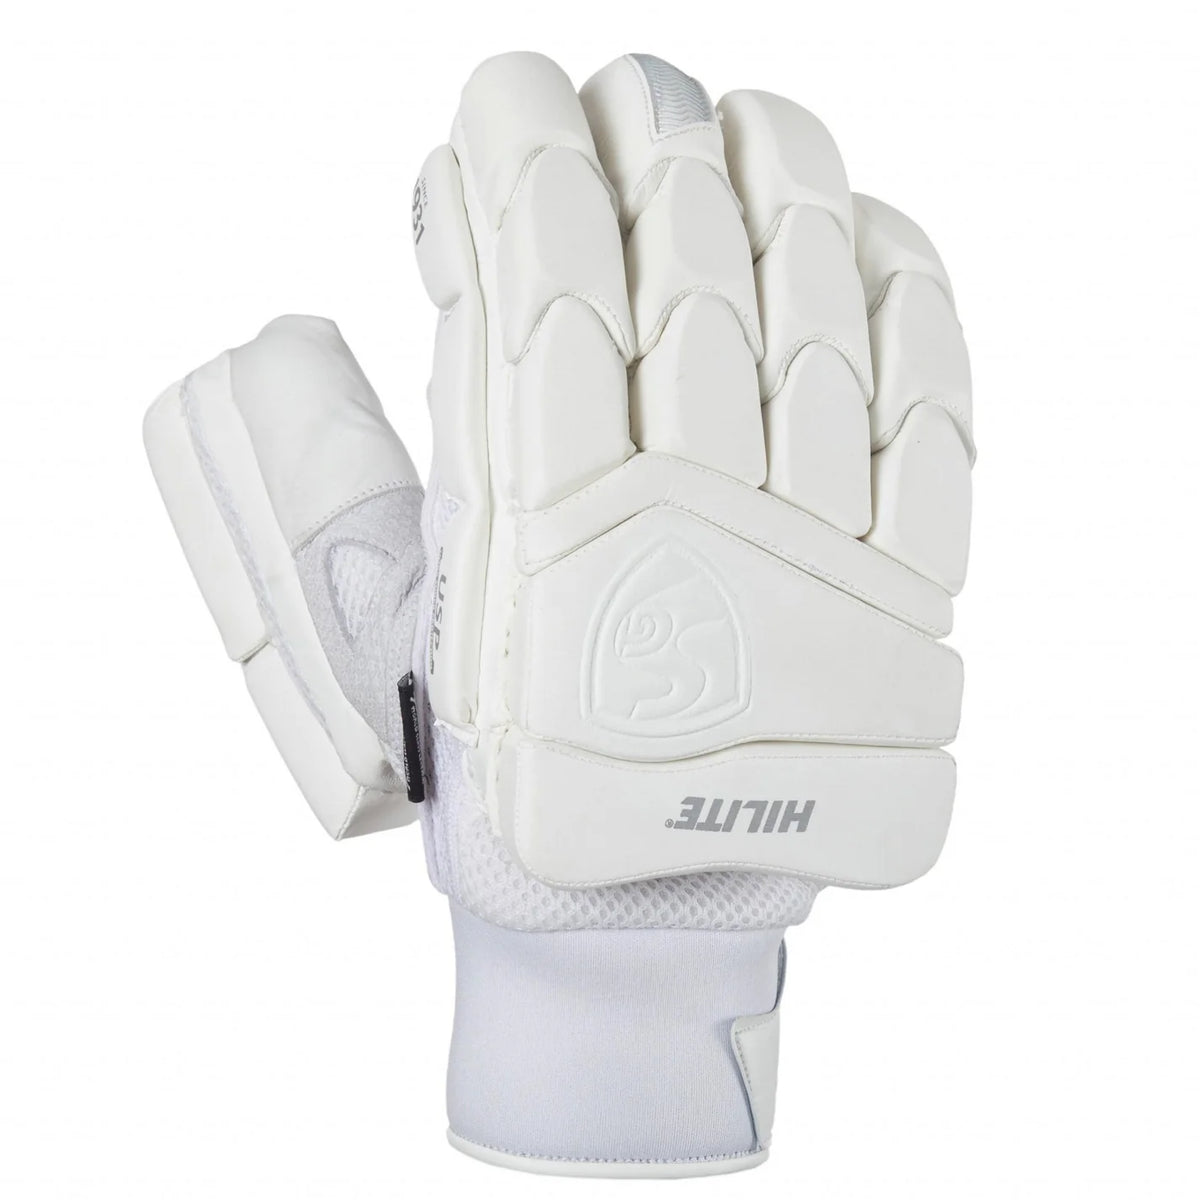 Pre-Order SG Hilite White Batting Gloves